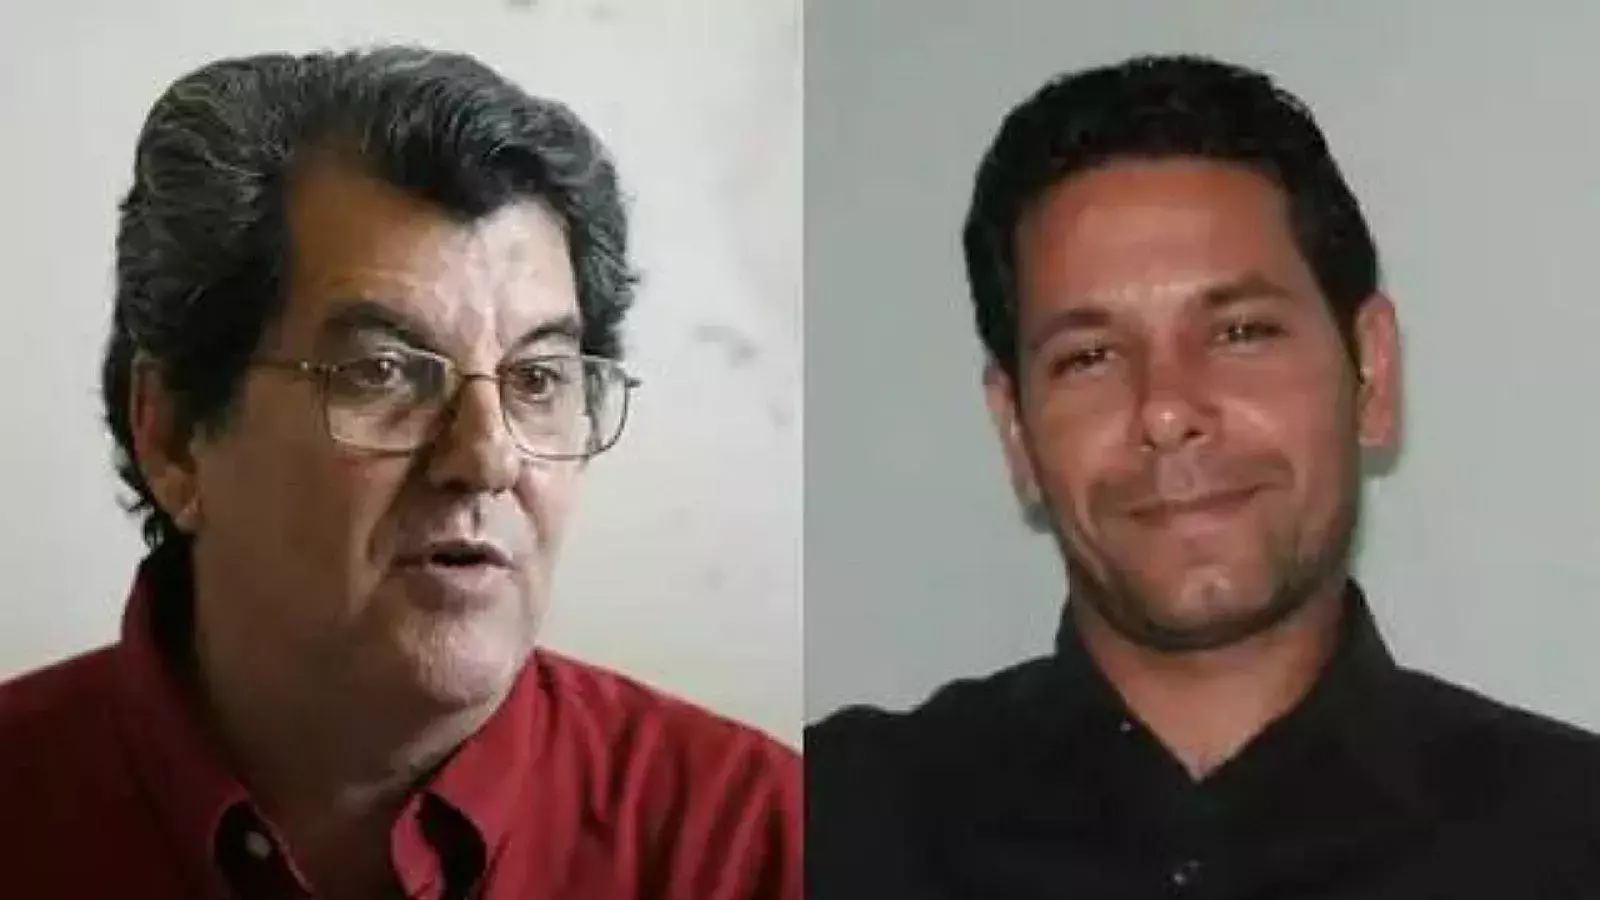 Oswaldo Payá y Harold Cepero, líderes disidentes cubanos